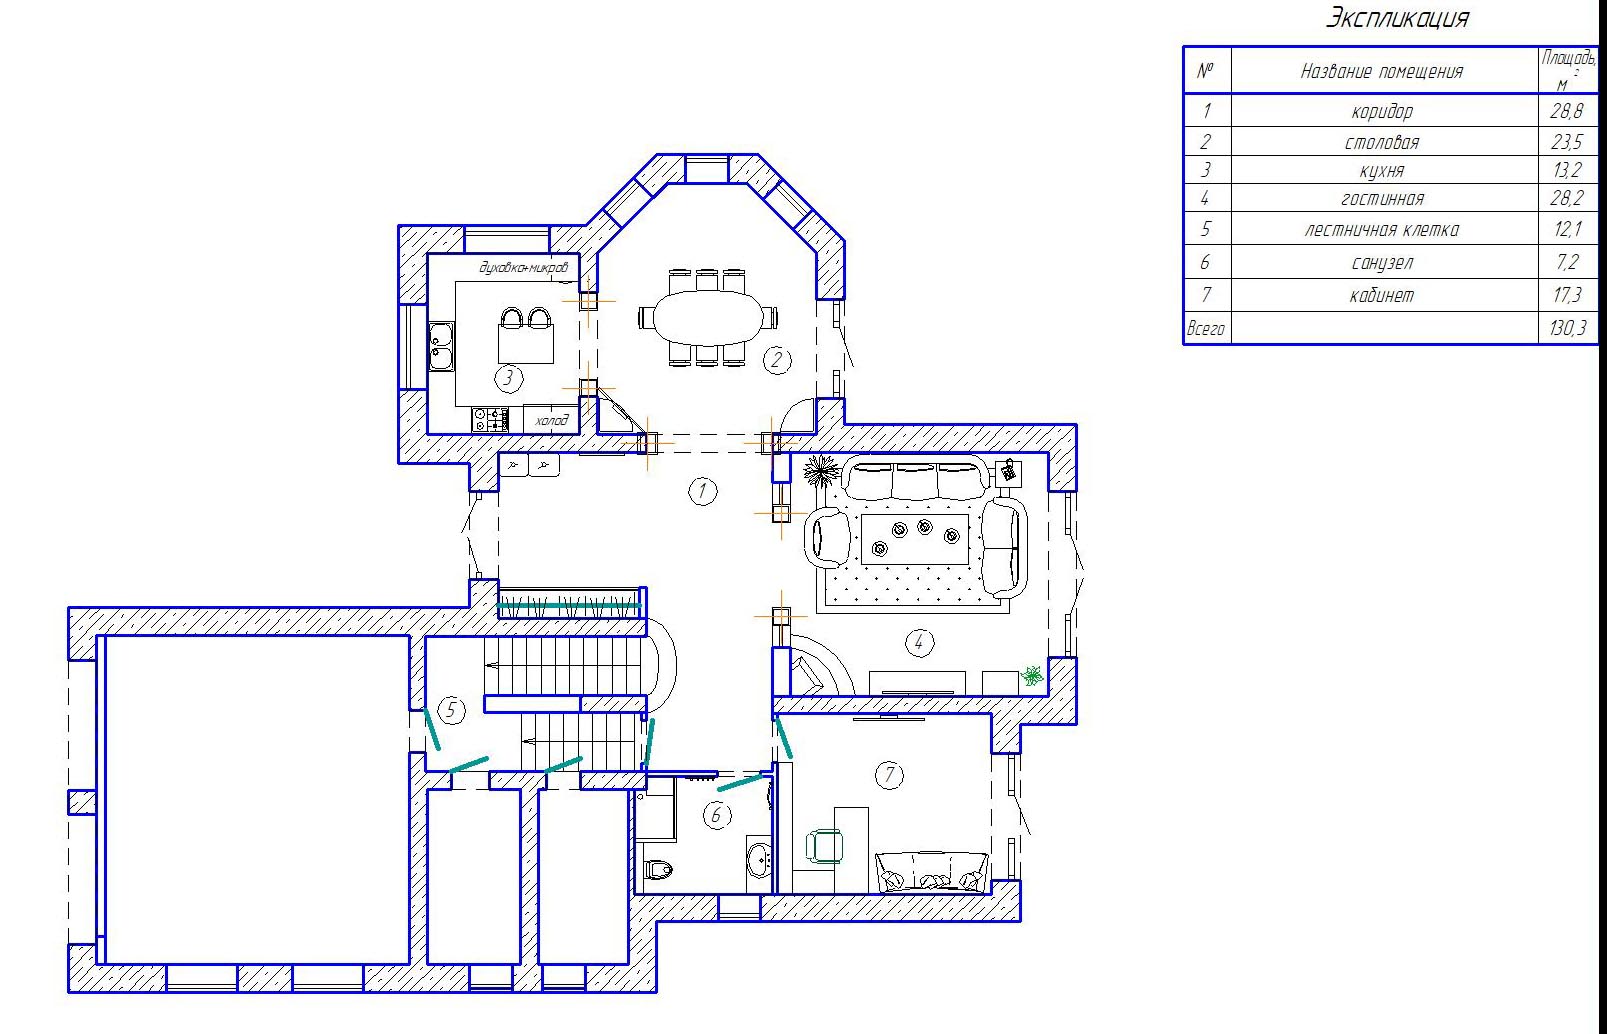 дизайн интерьера дома в Новых Петровцах 2-й этаж план мебели, планировка